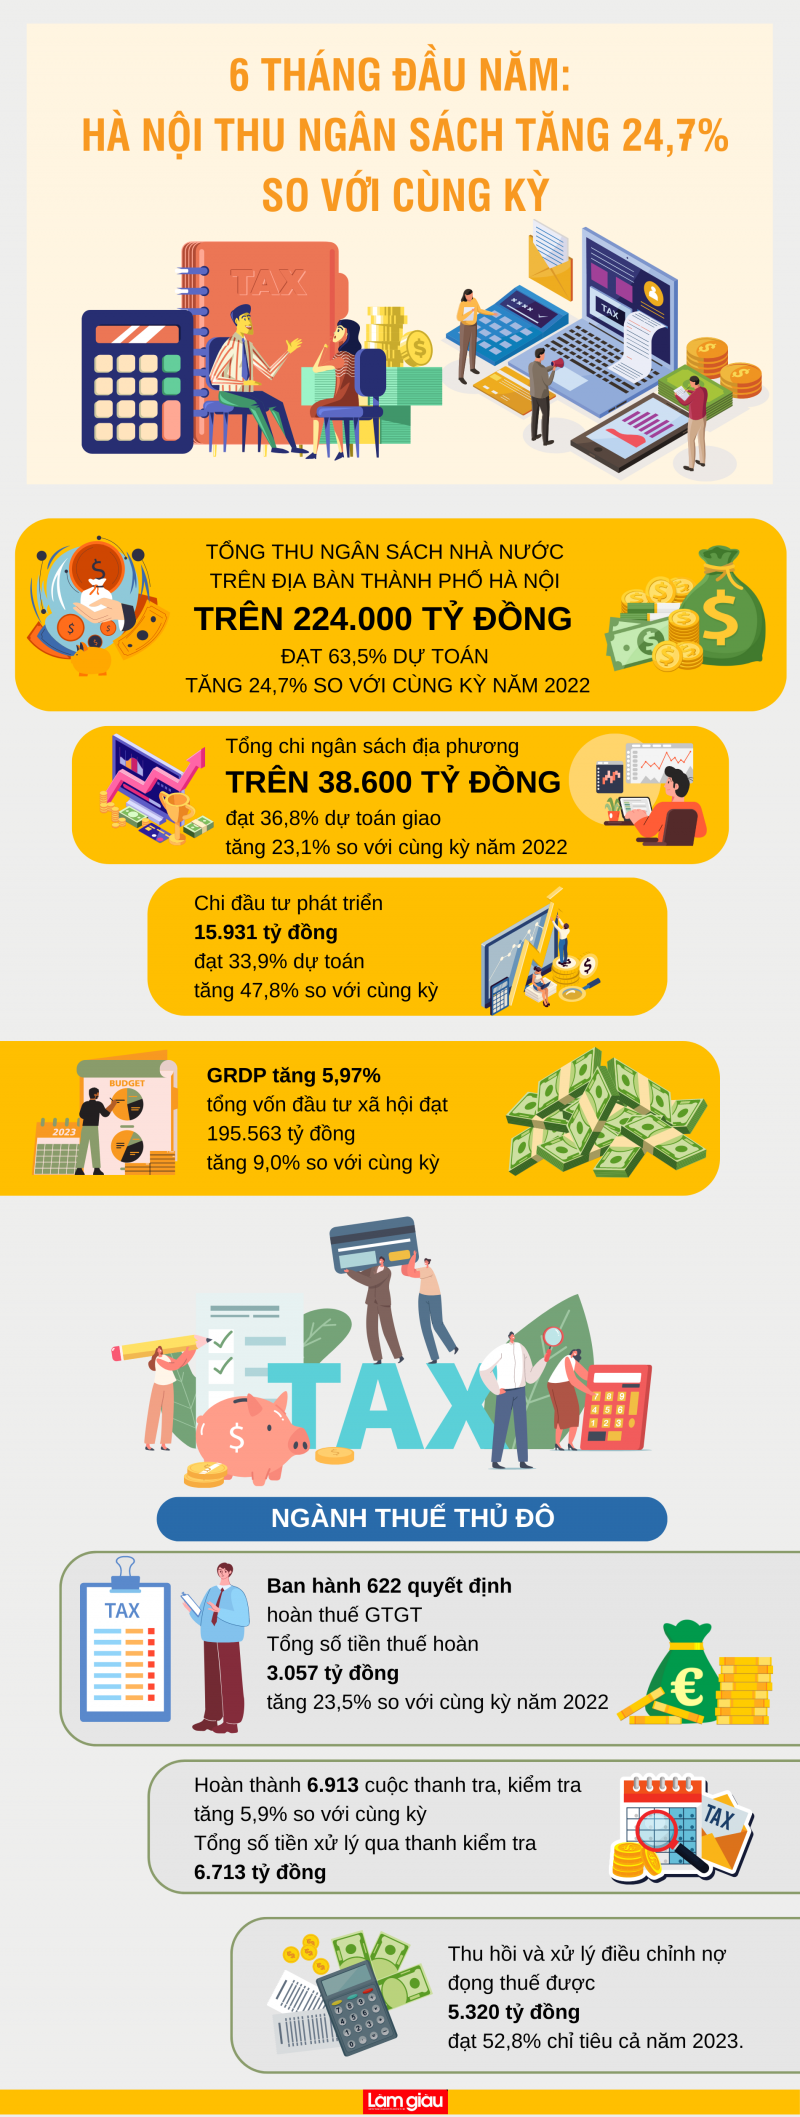 [Infographic]: 6 tháng đầu năm: Thu ngân sách của Hà Nội tăng 24,7% so với cùng kỳ